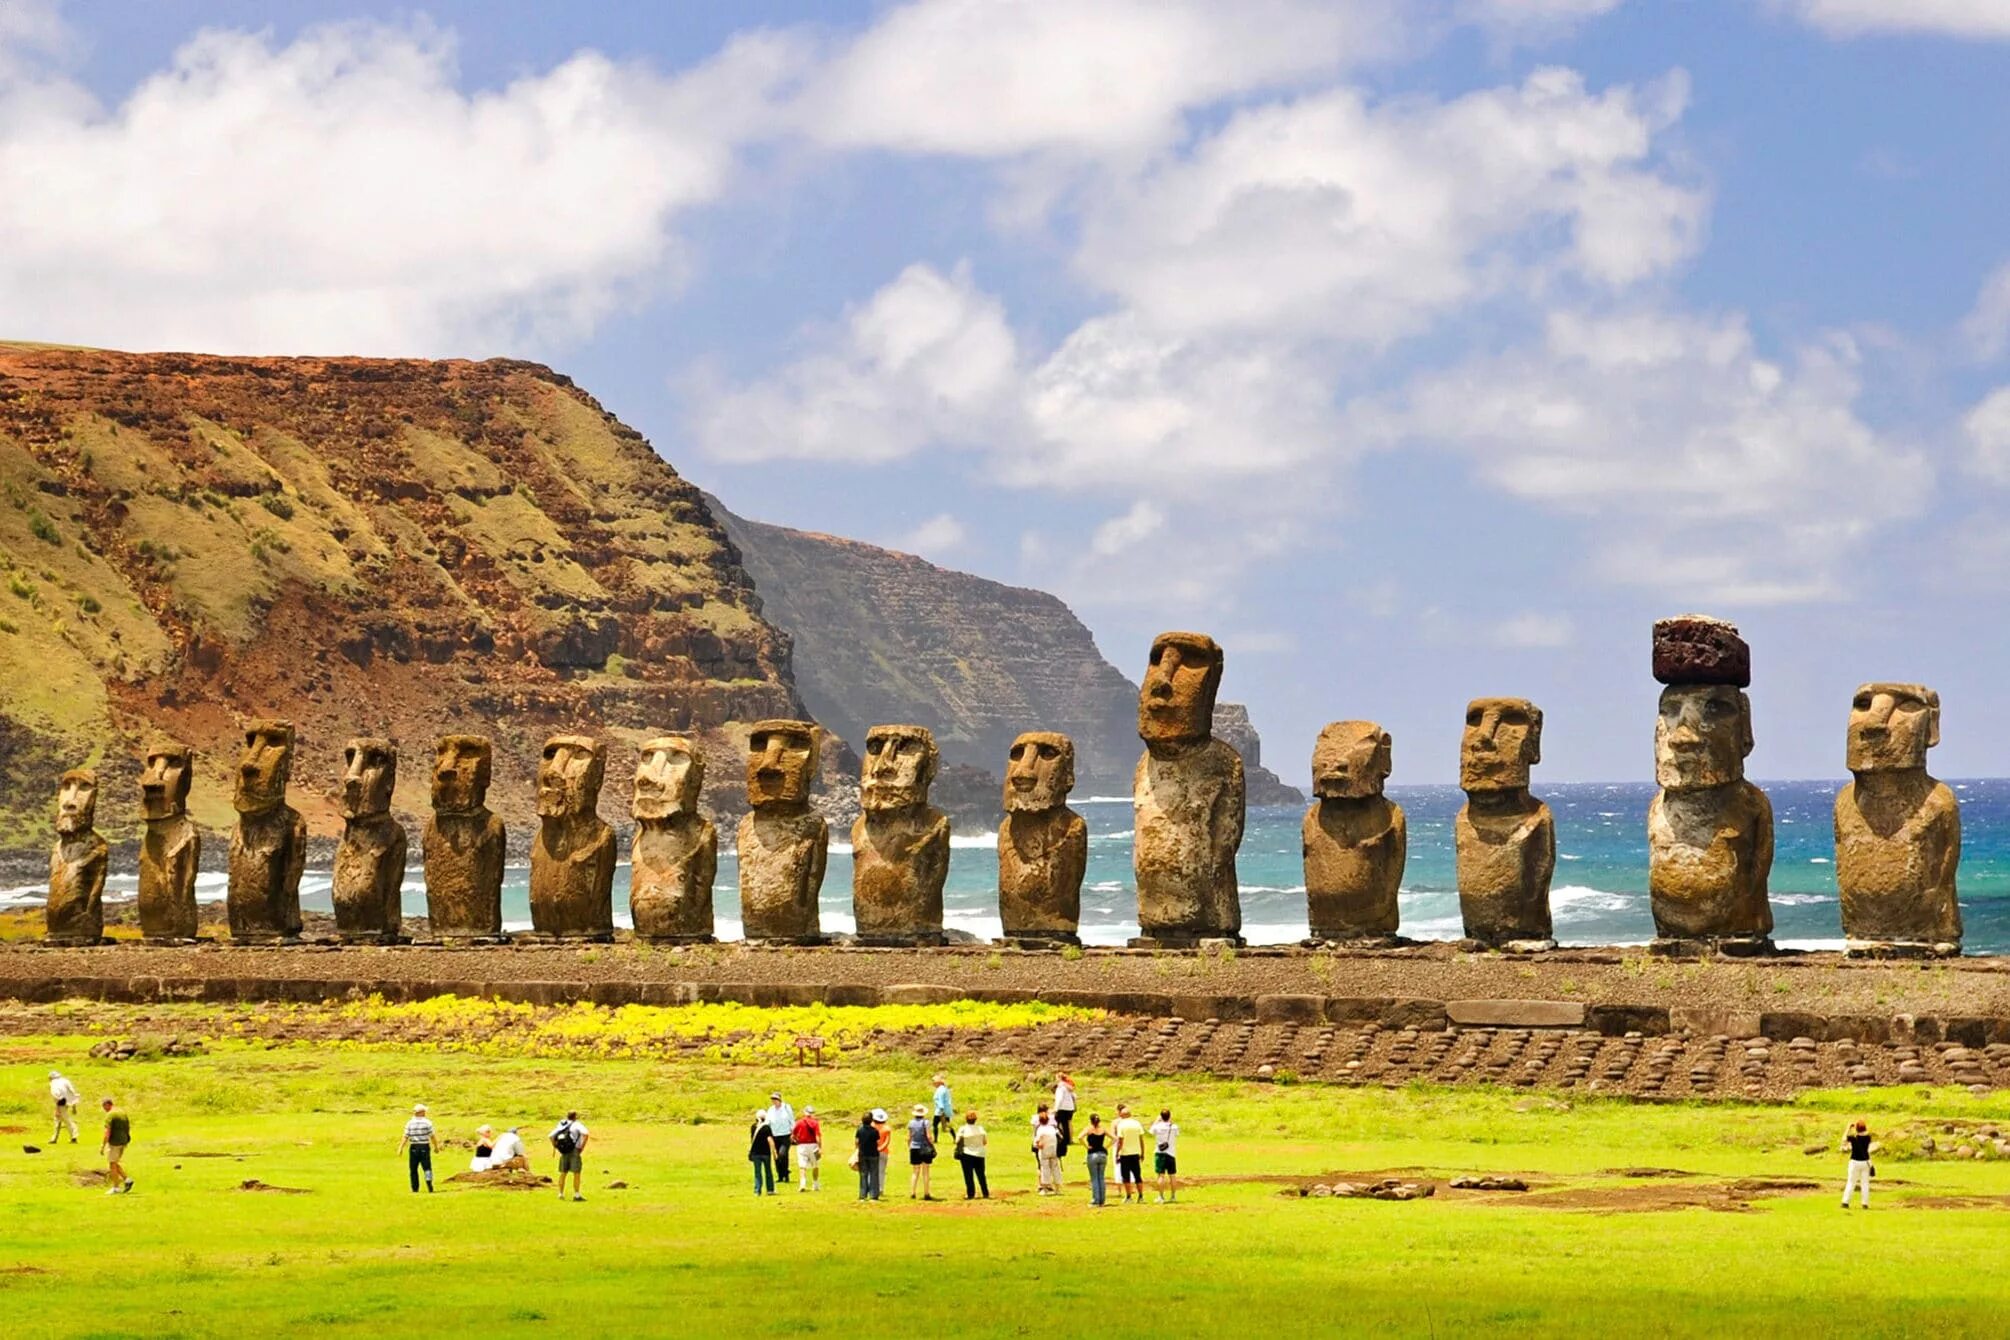 Остров Пасхи статуи Моаи. Каменные статуи Моаи остров Пасхи Чили. Моаи на острове Пасхи. Моаи (статуи острова Пасхи), Чили.